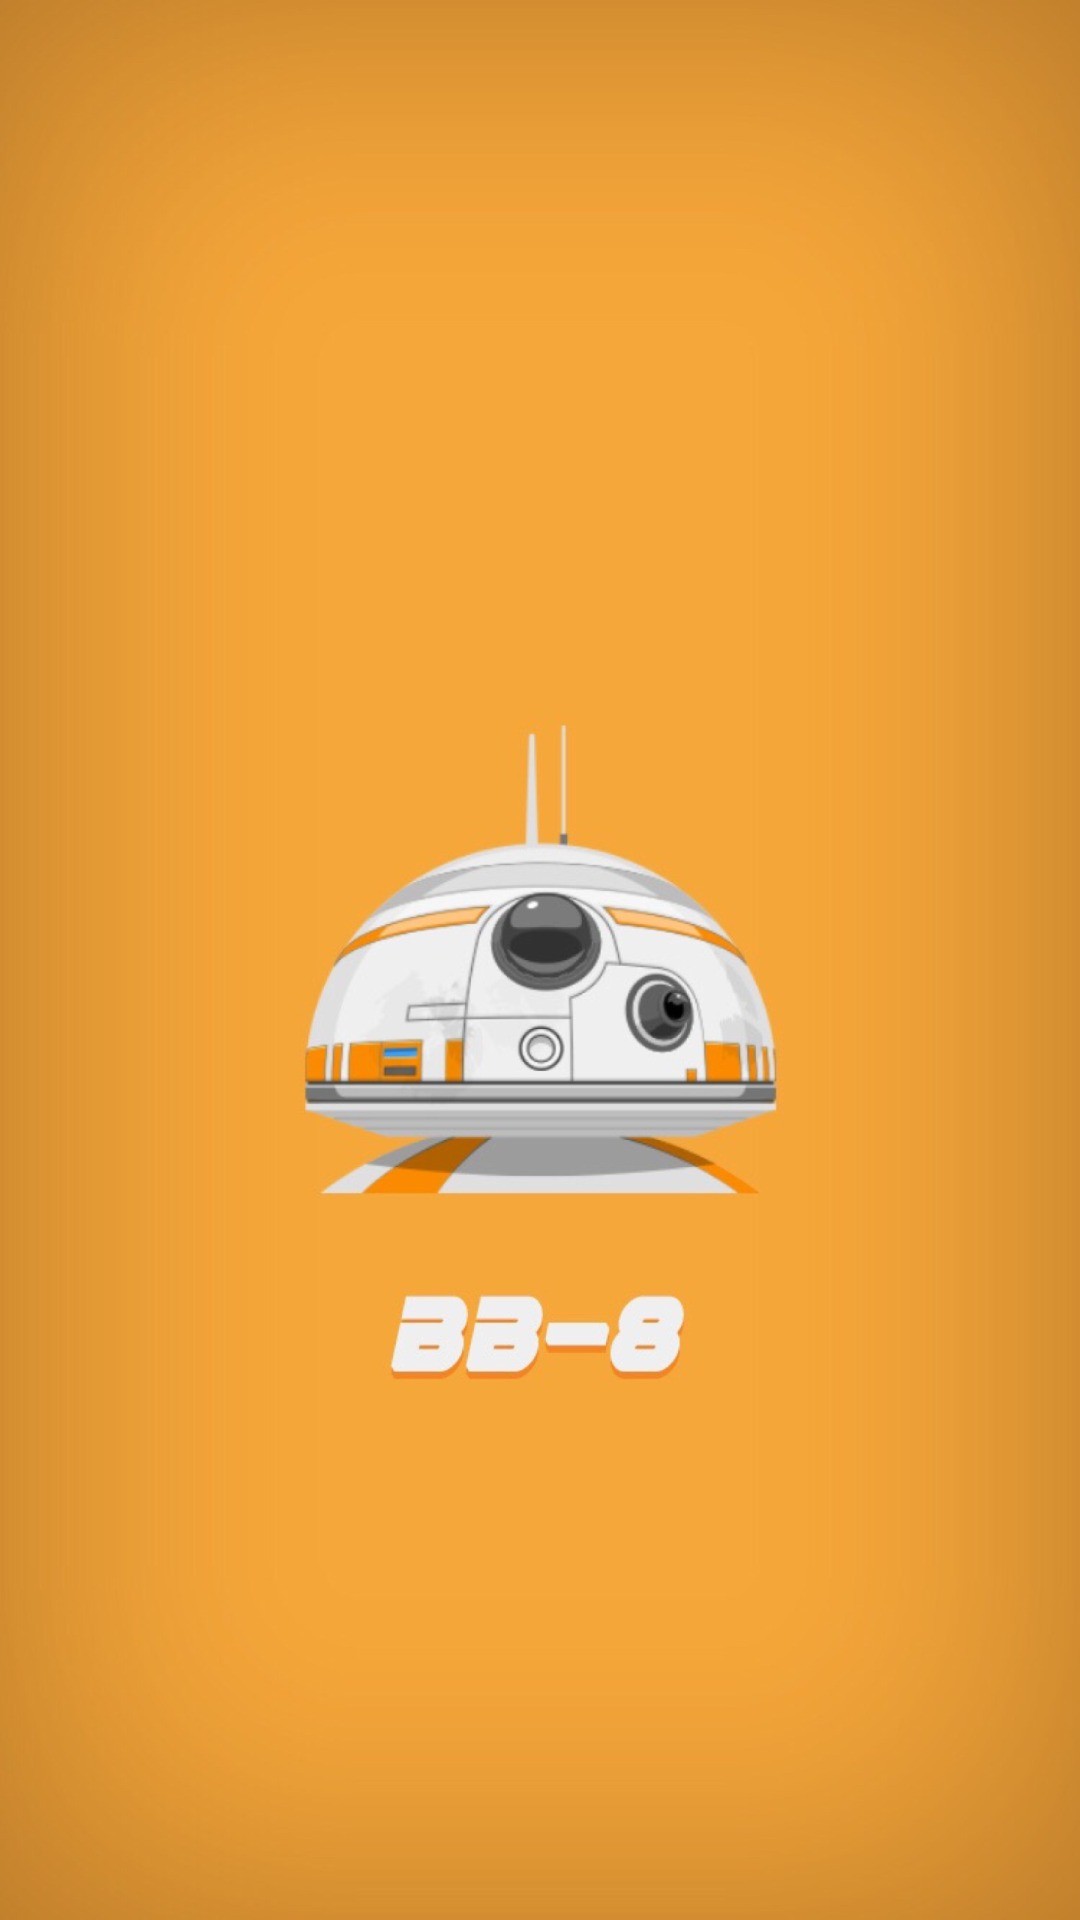 Star Wars Bb 8 Iphone Wallpaper